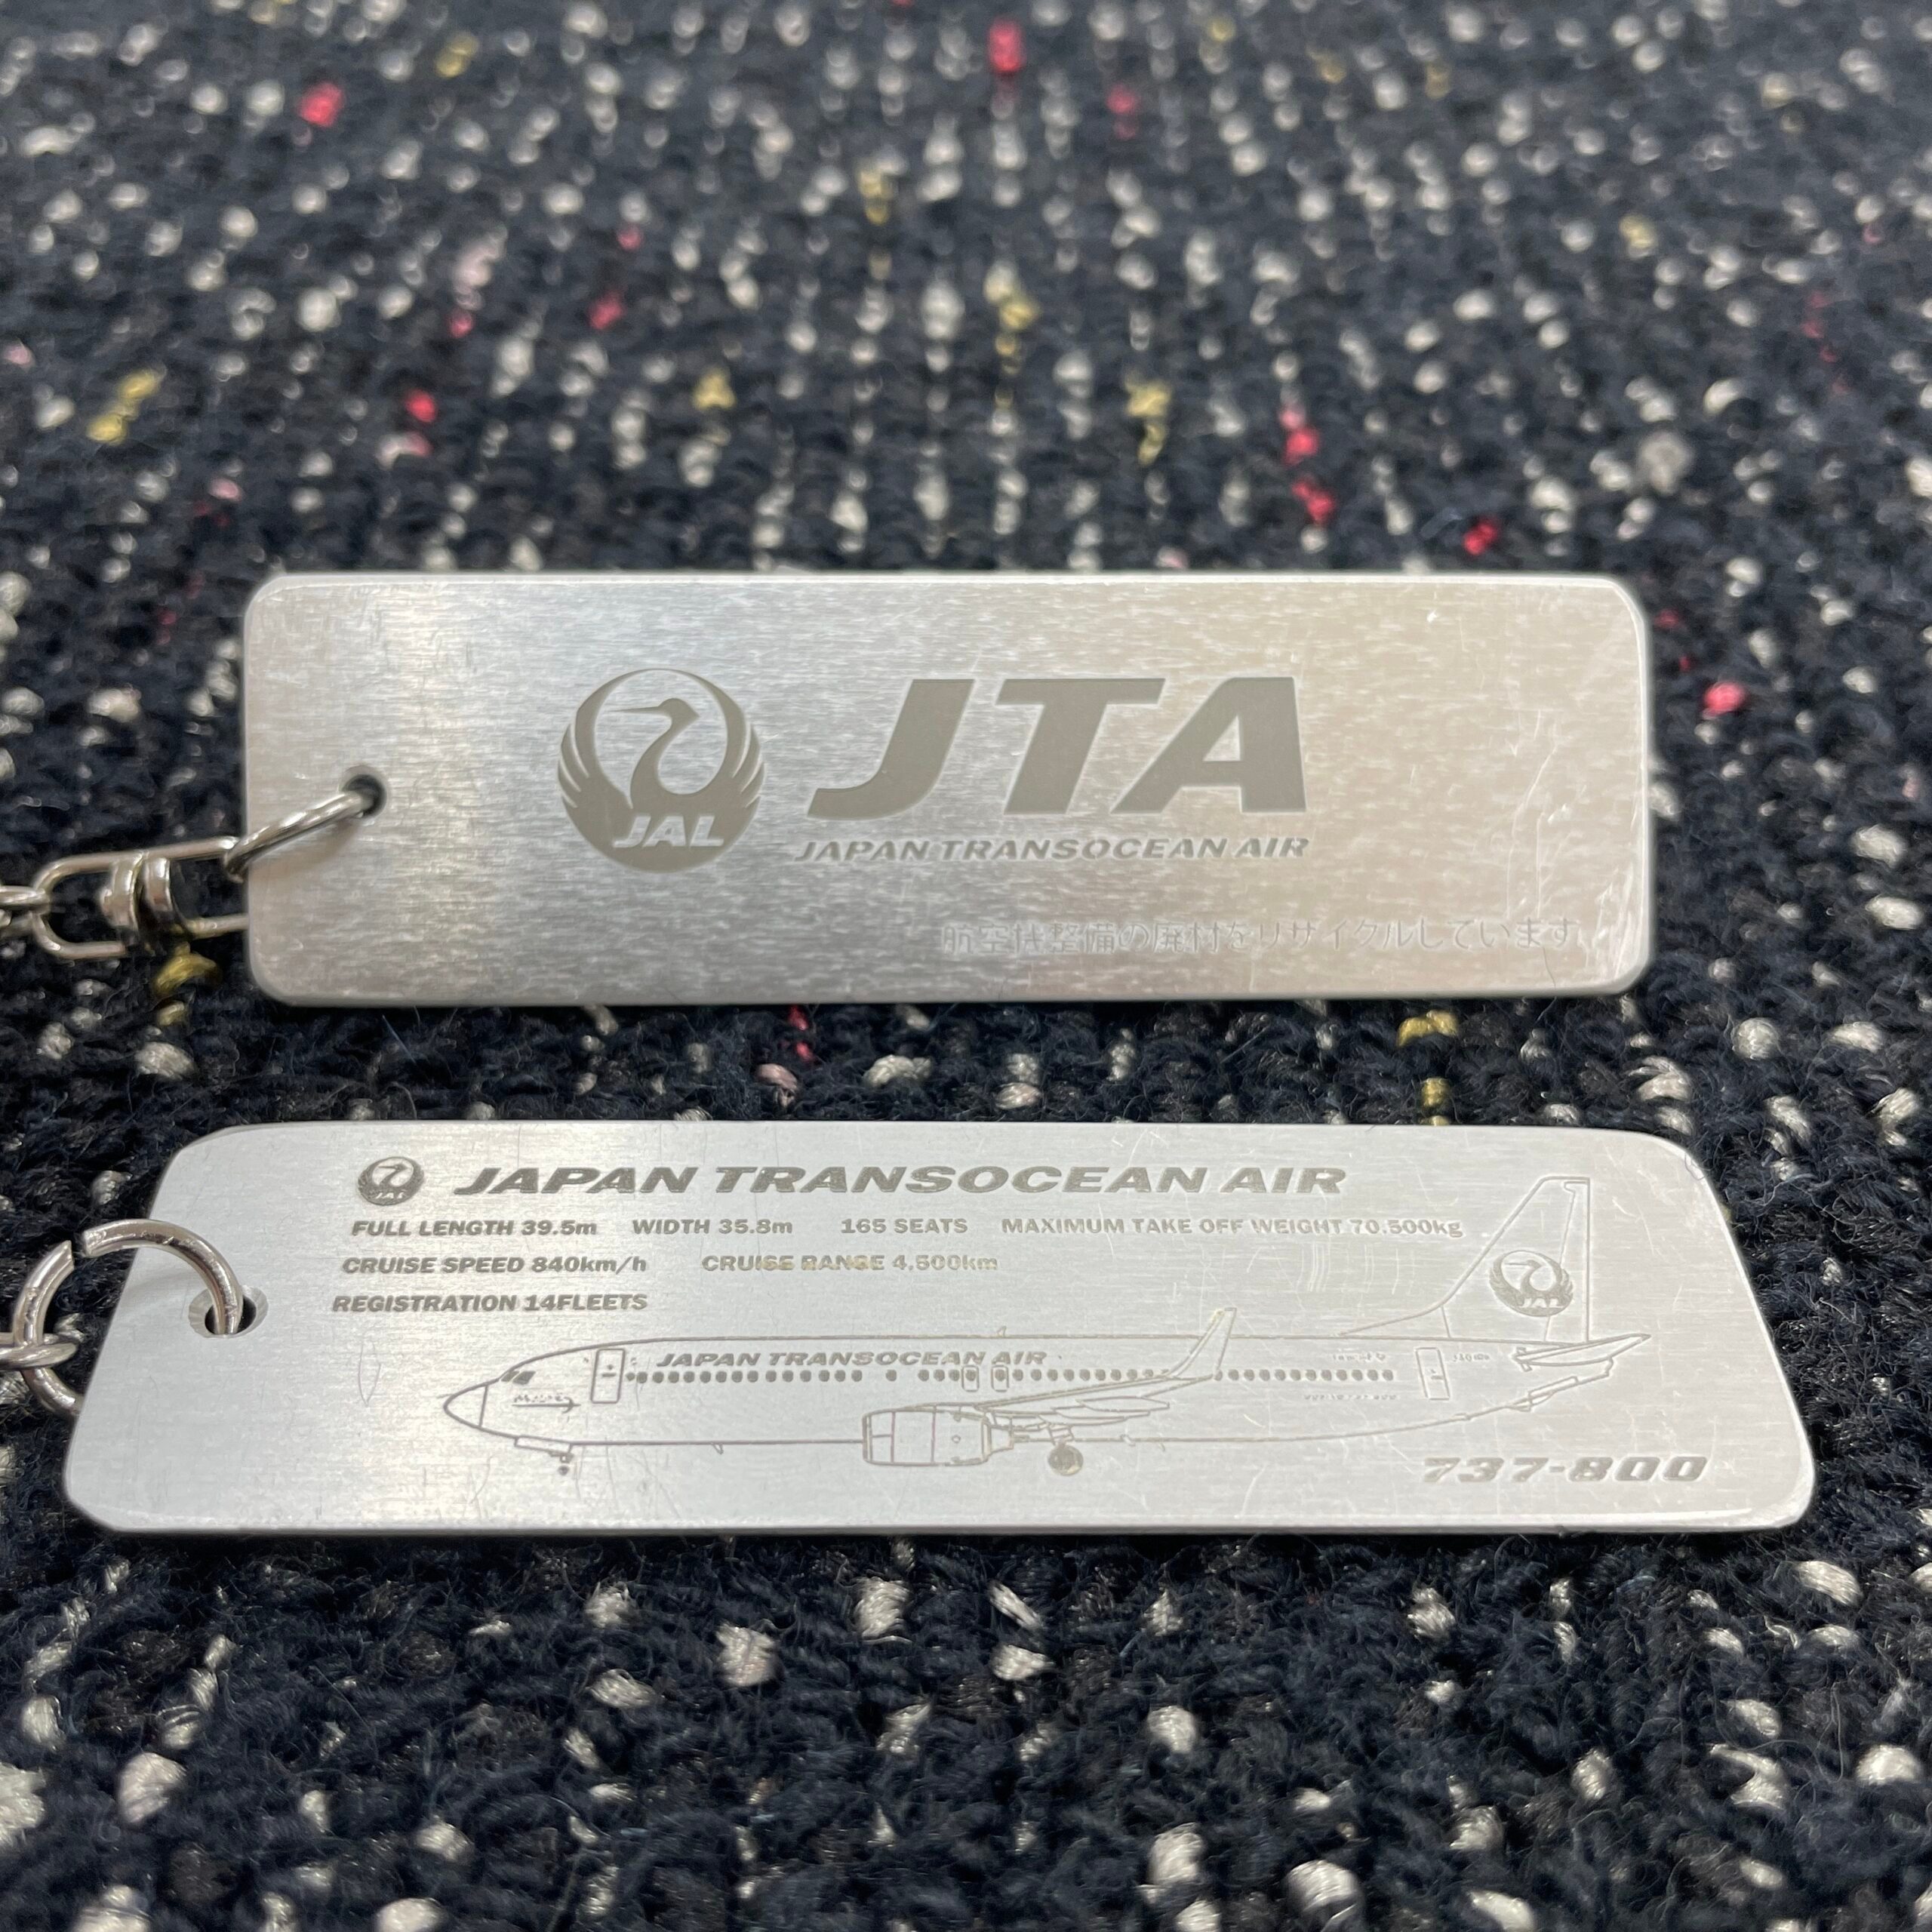 上品 JTA 完売品 機内販売 アップサイクルキーホルダー 日本トランス 